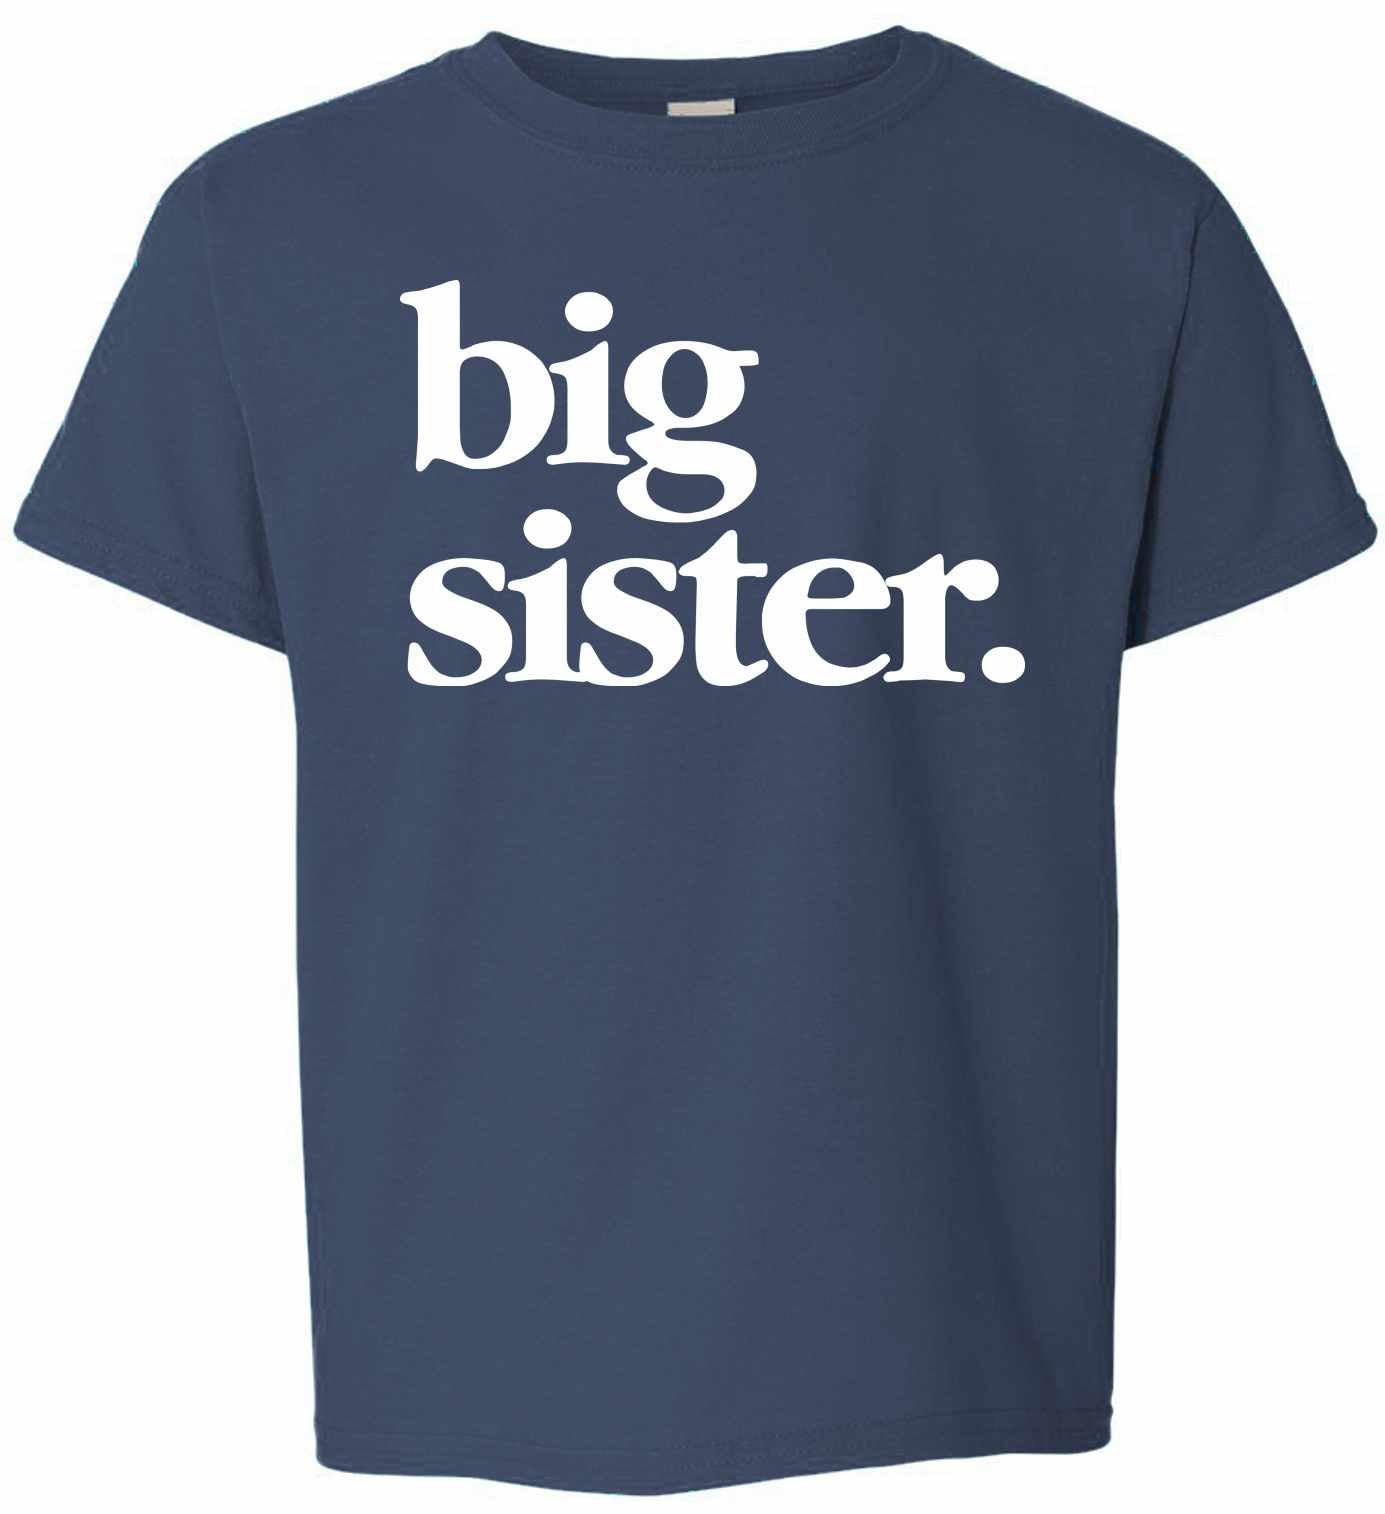 Big Sister on Kids T-Shirt (#1319-201)